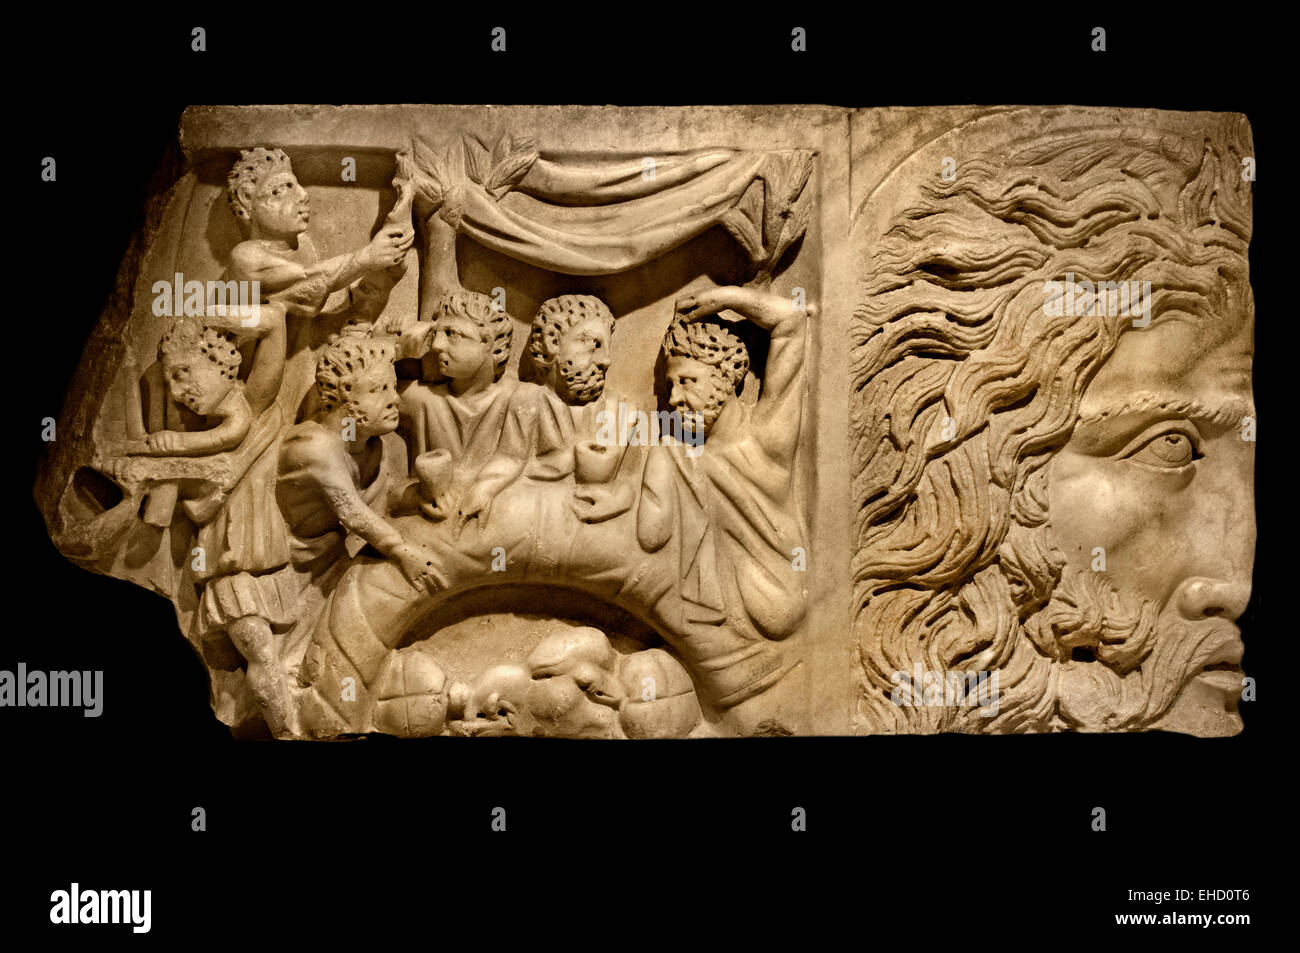 El Dios del Viento de socorro -cazadores disfrutar de un partido de caza con éxito (Comida) fragmento de sarcófago romano del siglo 3 D.C. Roma Foto de stock